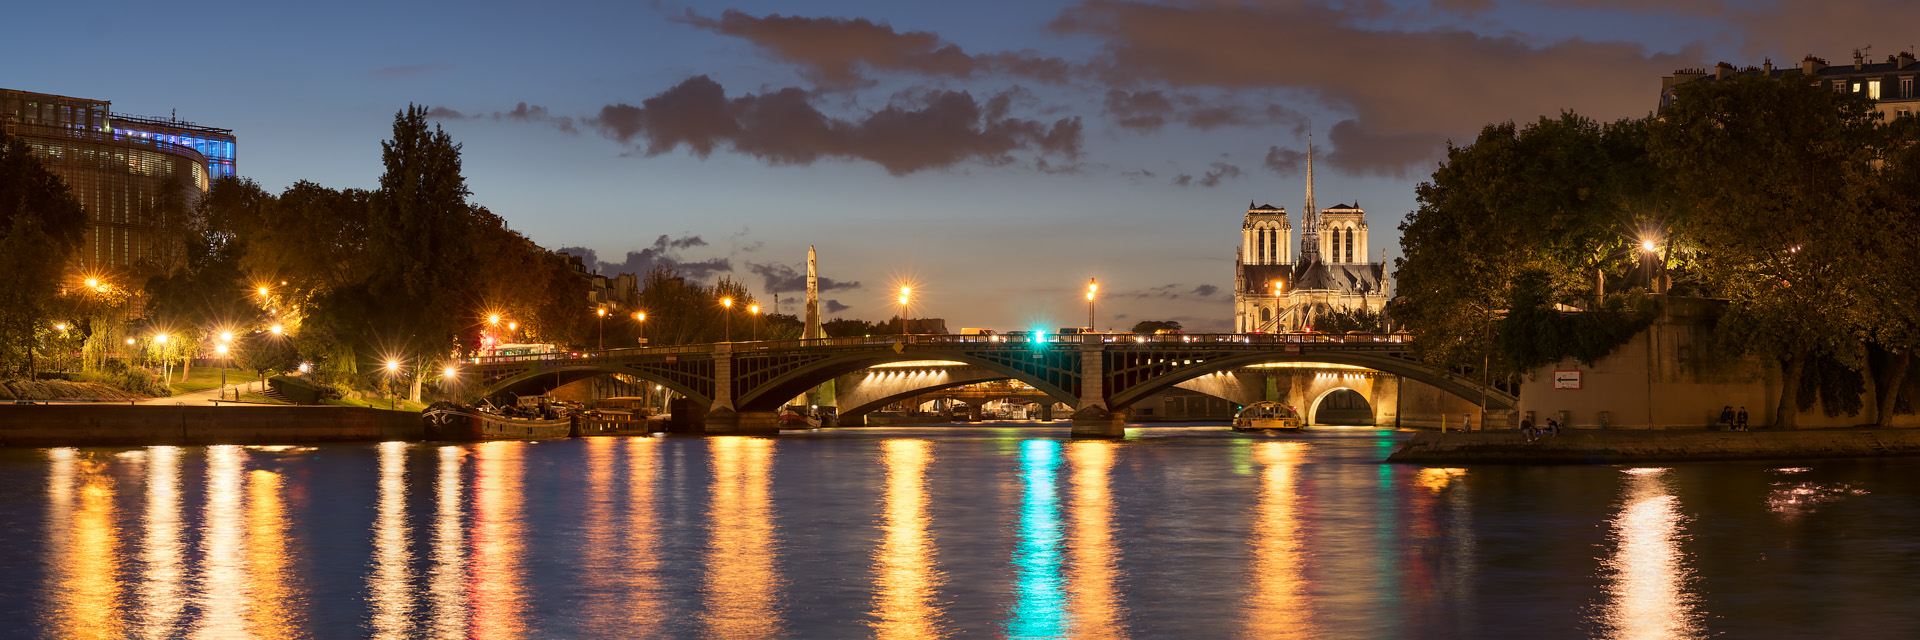 Pont de Sully et Notre Dame by David Briard